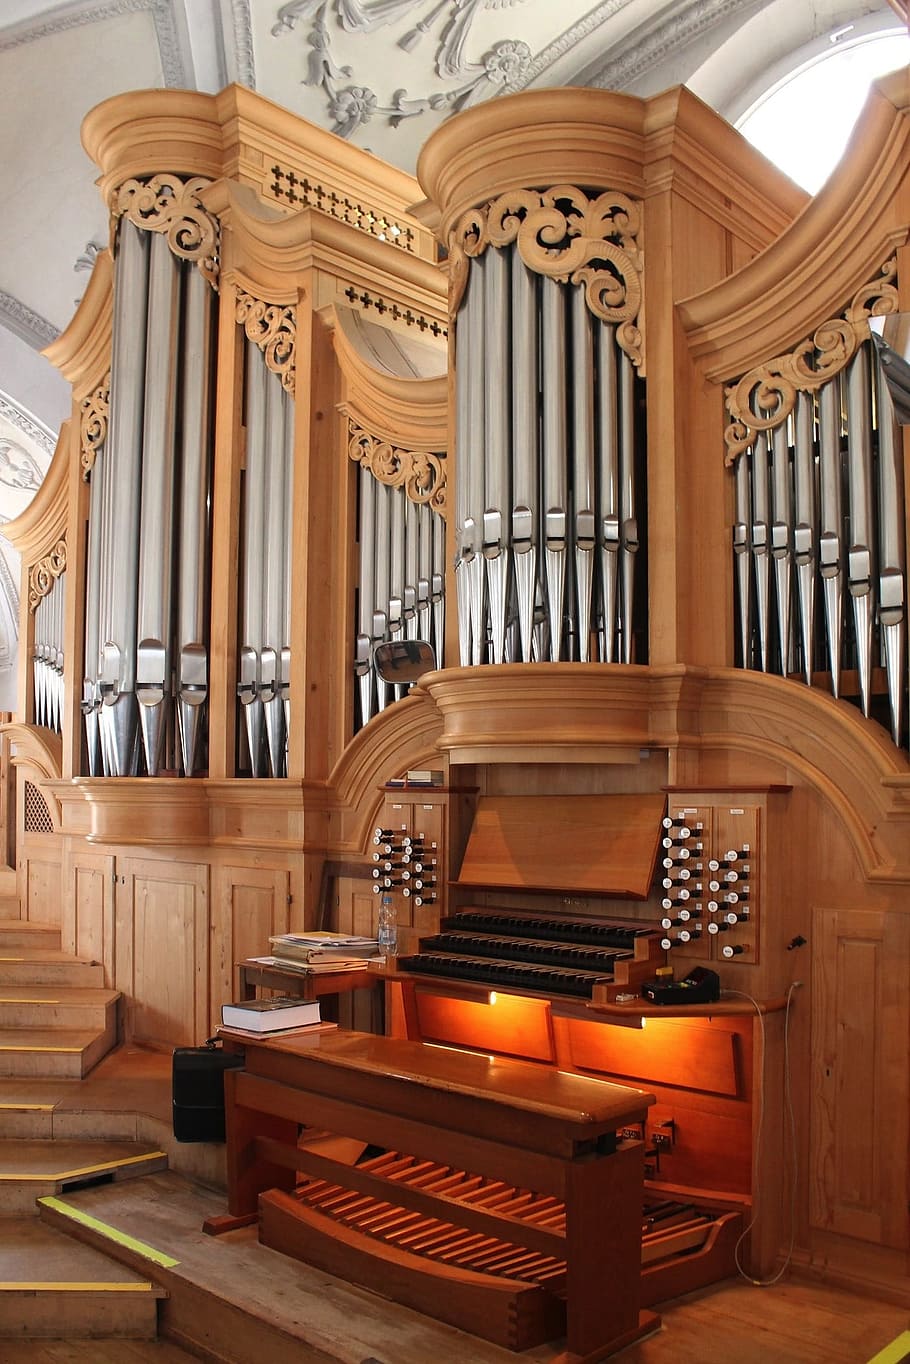 piano de console marrom, Alemanha, Wolfratshausen, St Andreas, igreja, órgão, música, instrumento, ornamentado, decorativos